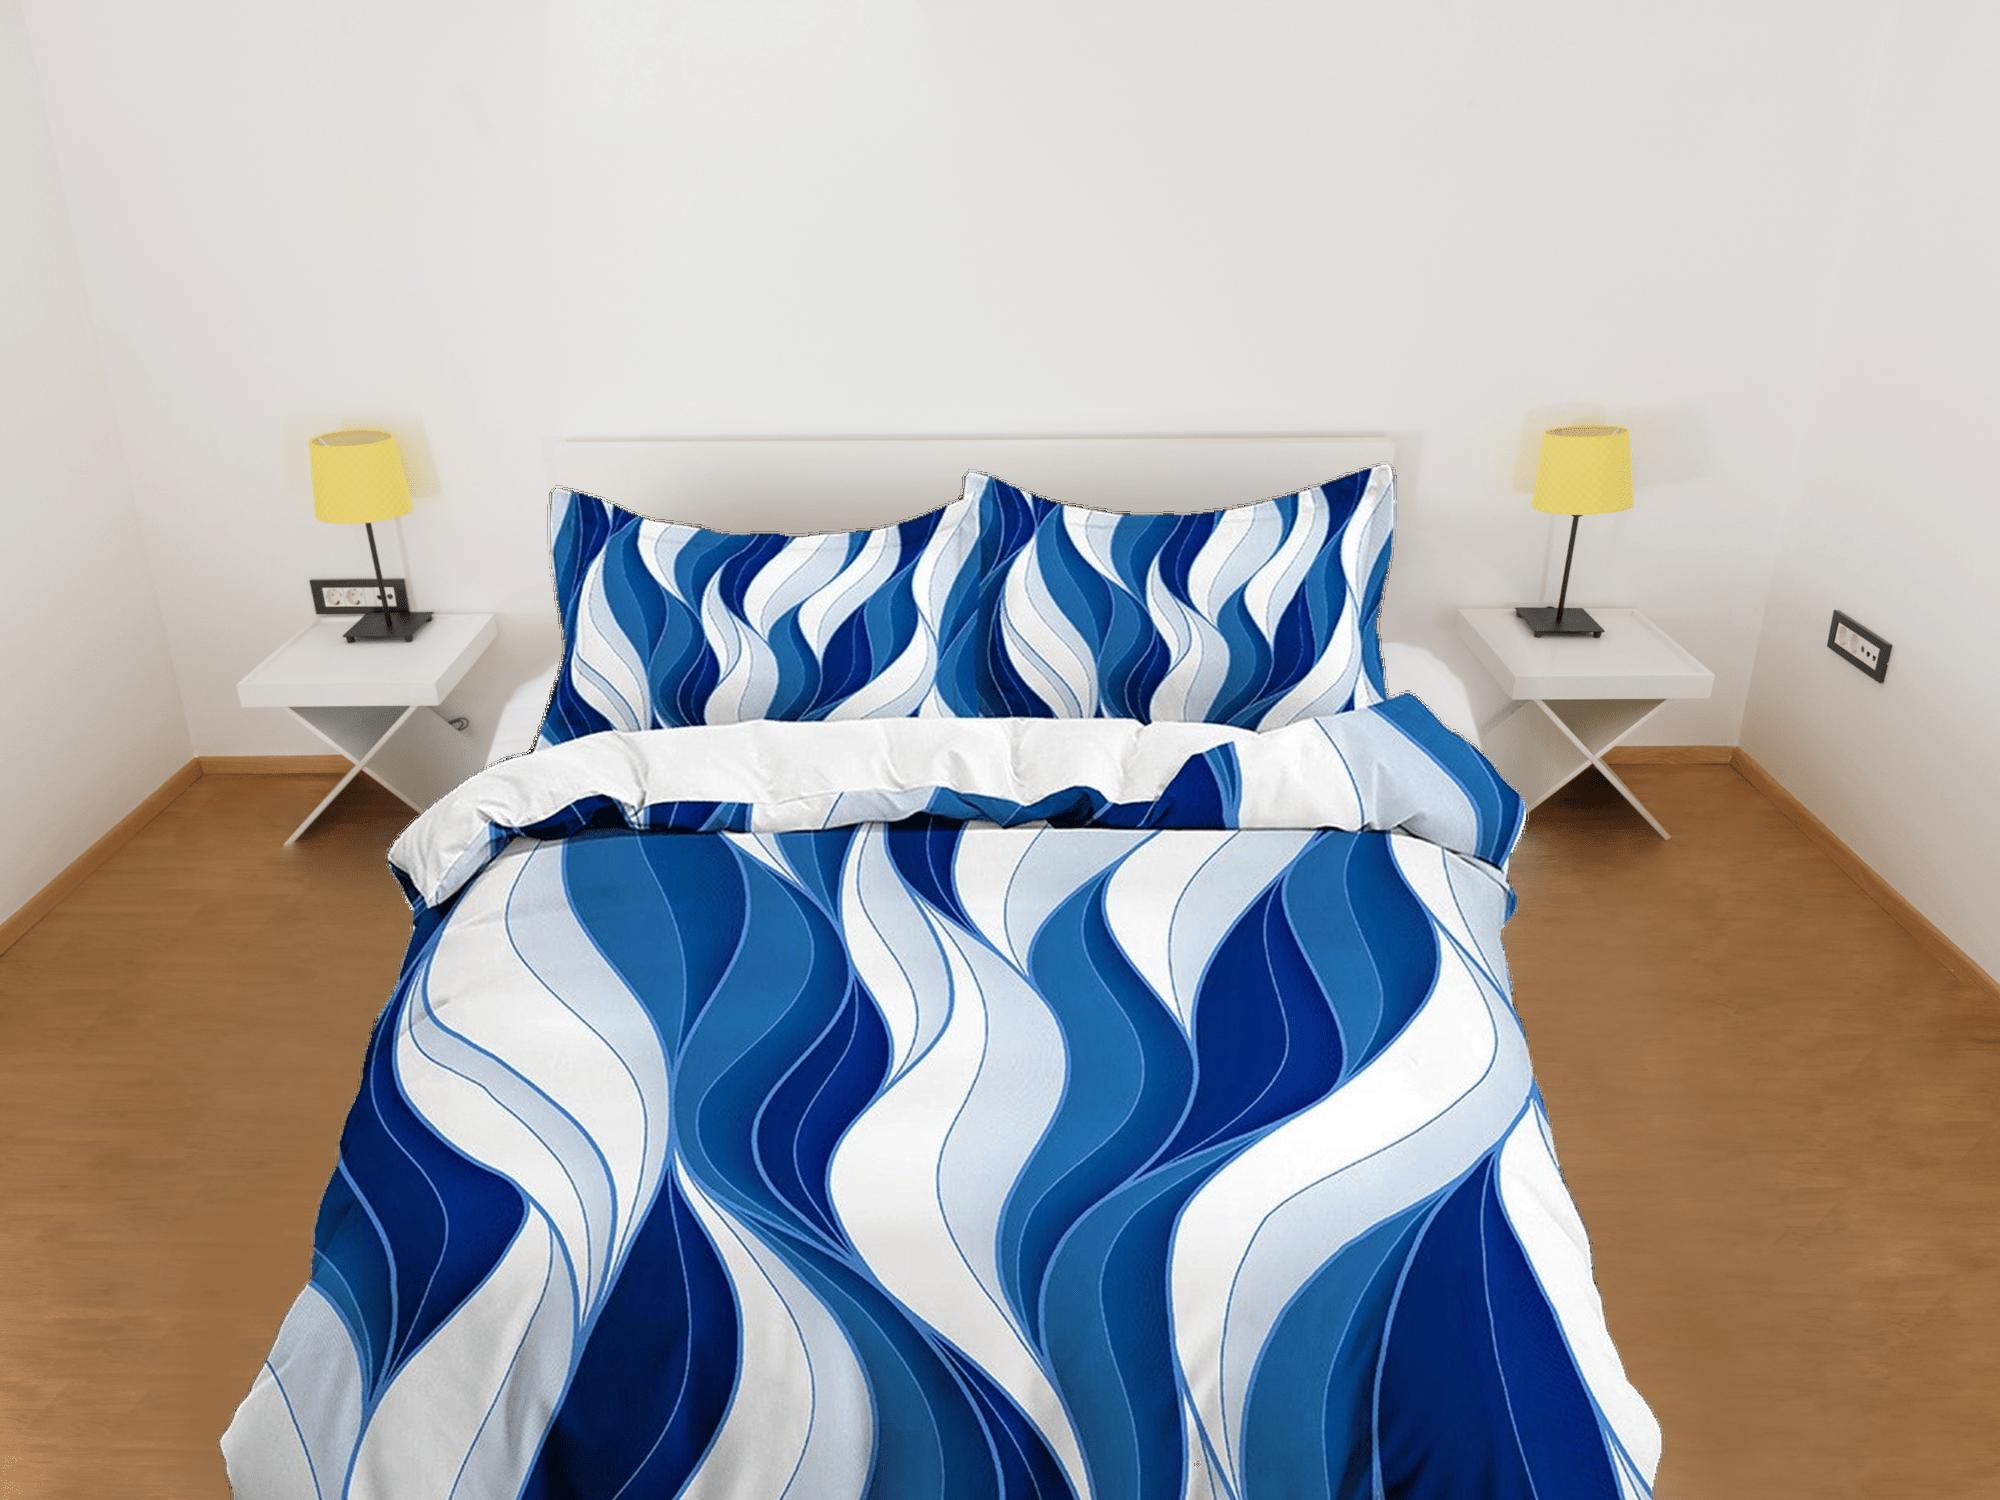 daintyduvet Mid century modern bedroom art set white and blue duvet cover, aesthetic room decor boho chic bedding set full, colorful maximalist retro